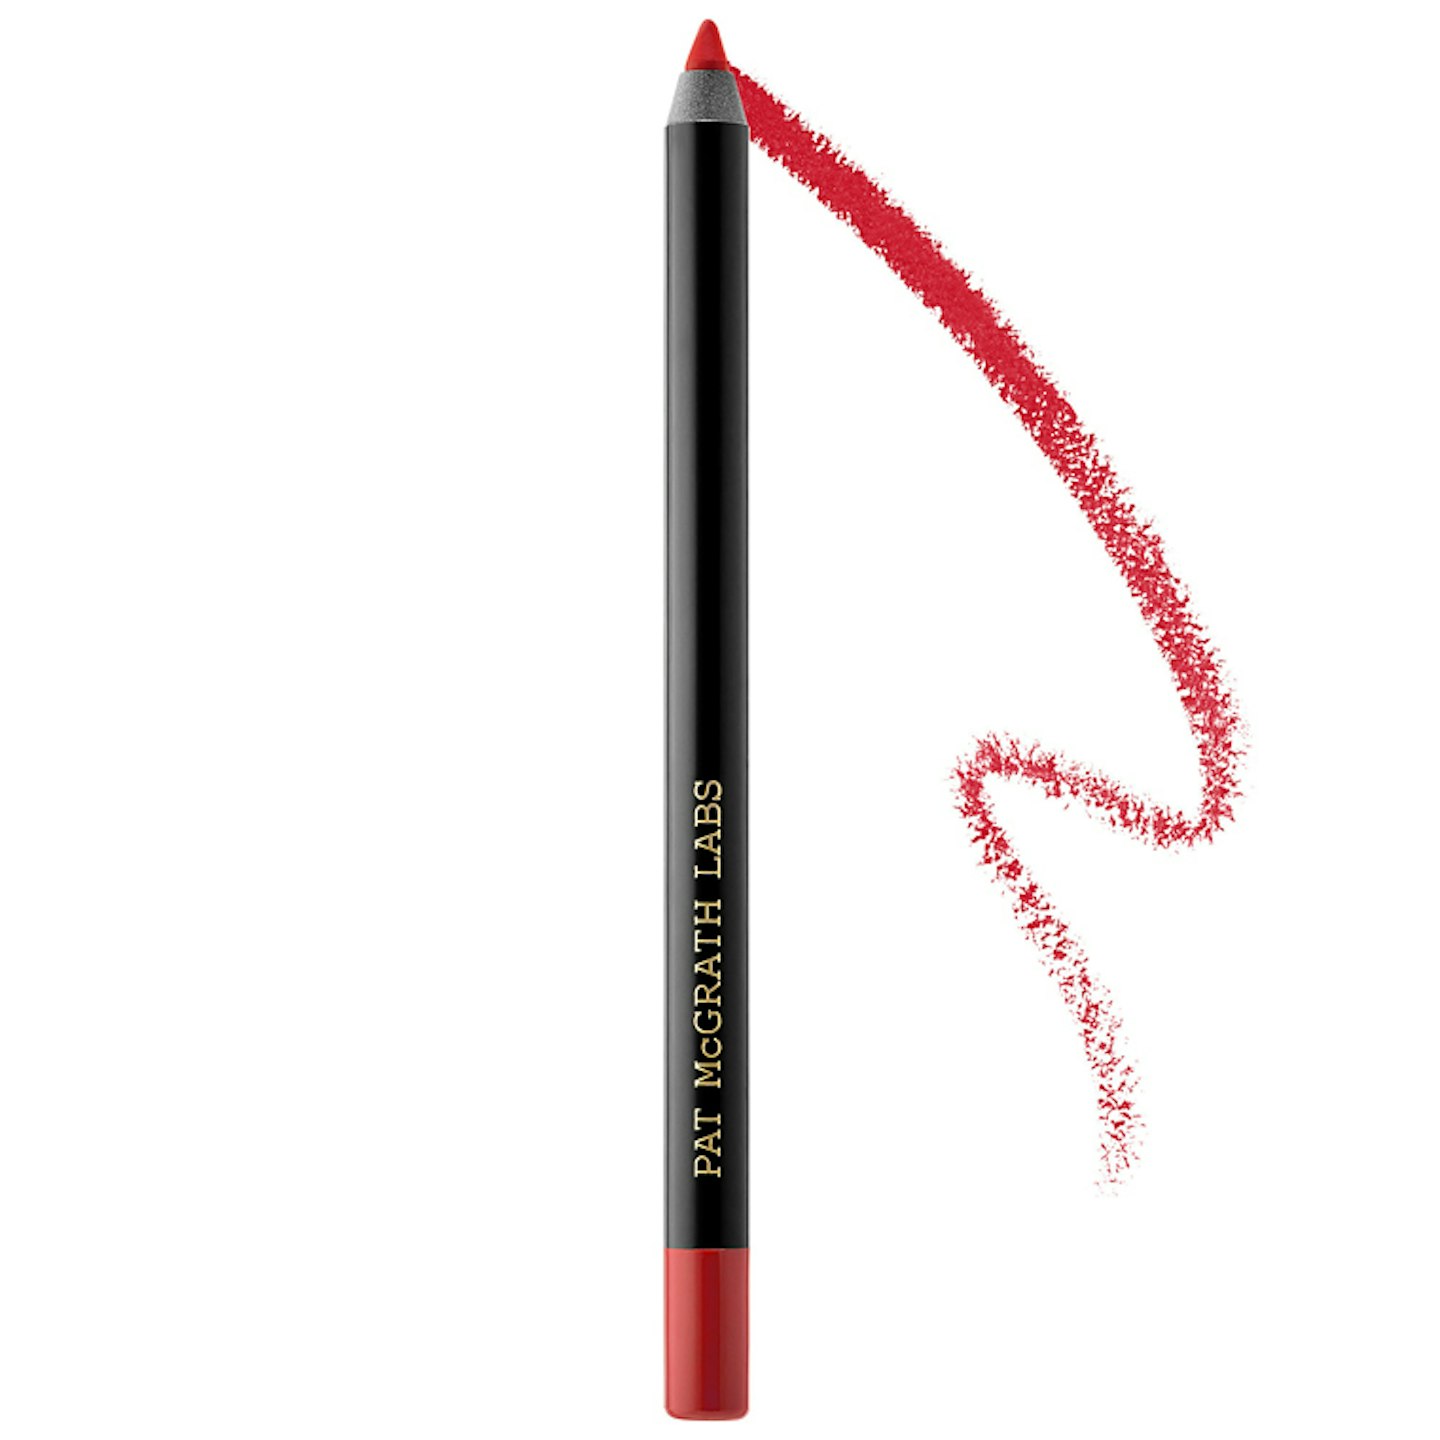 Pat McGrath Labs PermaGel Ultra Lip Pencil in Major Red, £25